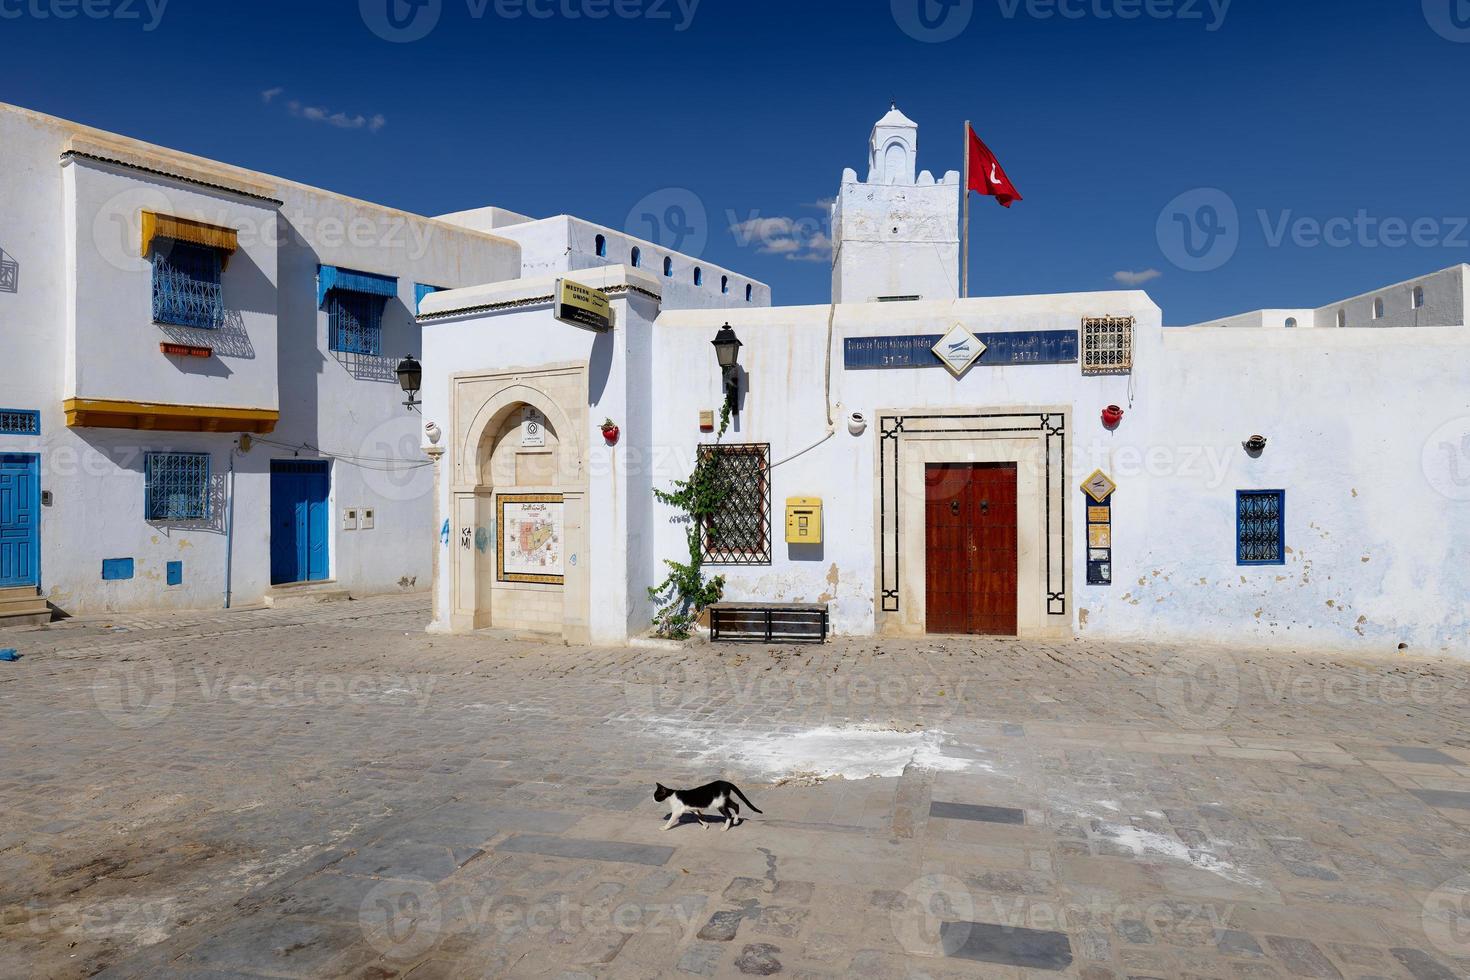 cidade velha de medina de kairouan na tunísia. kairouan é um testemunho único dos primeiros séculos desta civilização e de seu desenvolvimento arquitetônico e urbano. foto